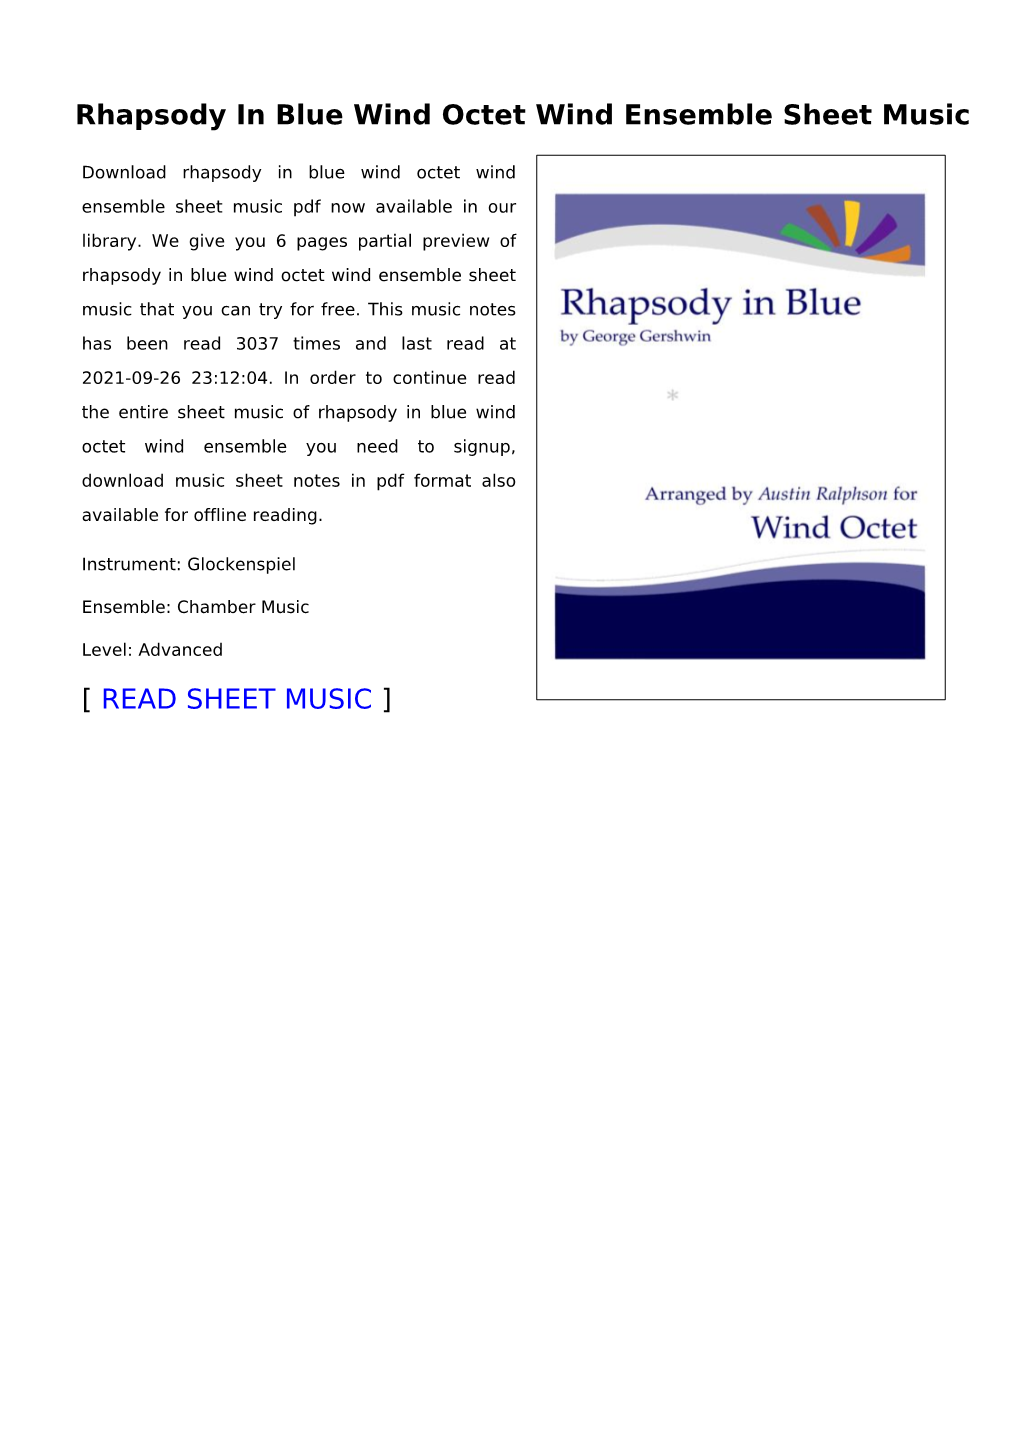 Rhapsody in Blue Wind Octet Wind Ensemble Sheet Music